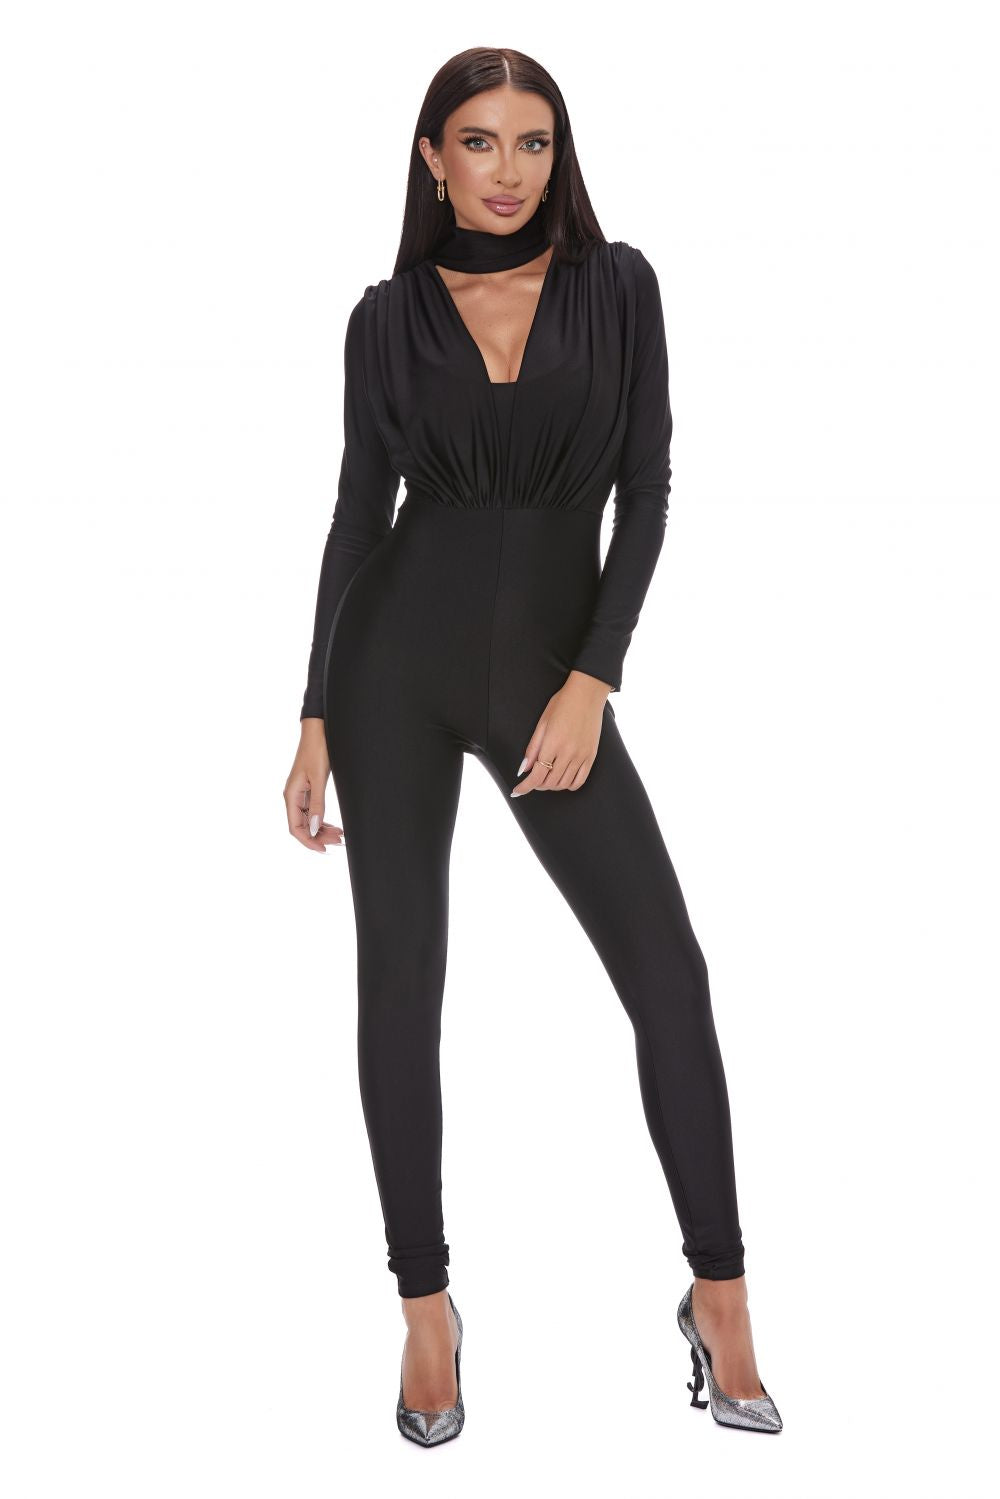 Elegant black jumpsuit for women Taddeo Bogas